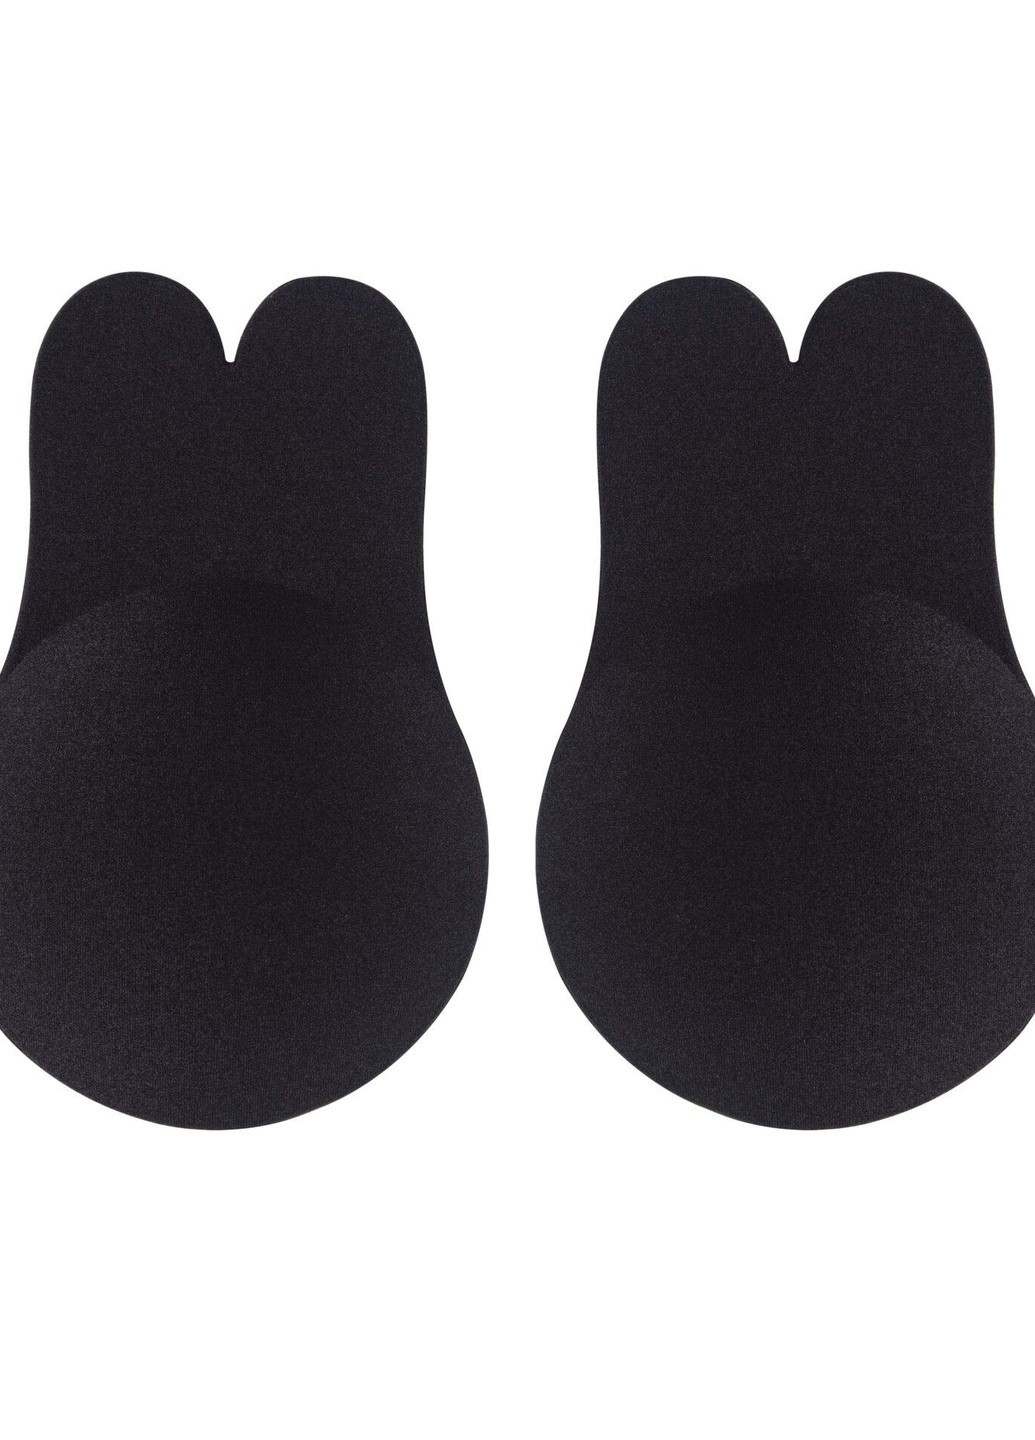 Чёрный невидимка бюстгальтер жіночий на силіконі s/m чорний ac029 Lingadore без косточек полиэстер